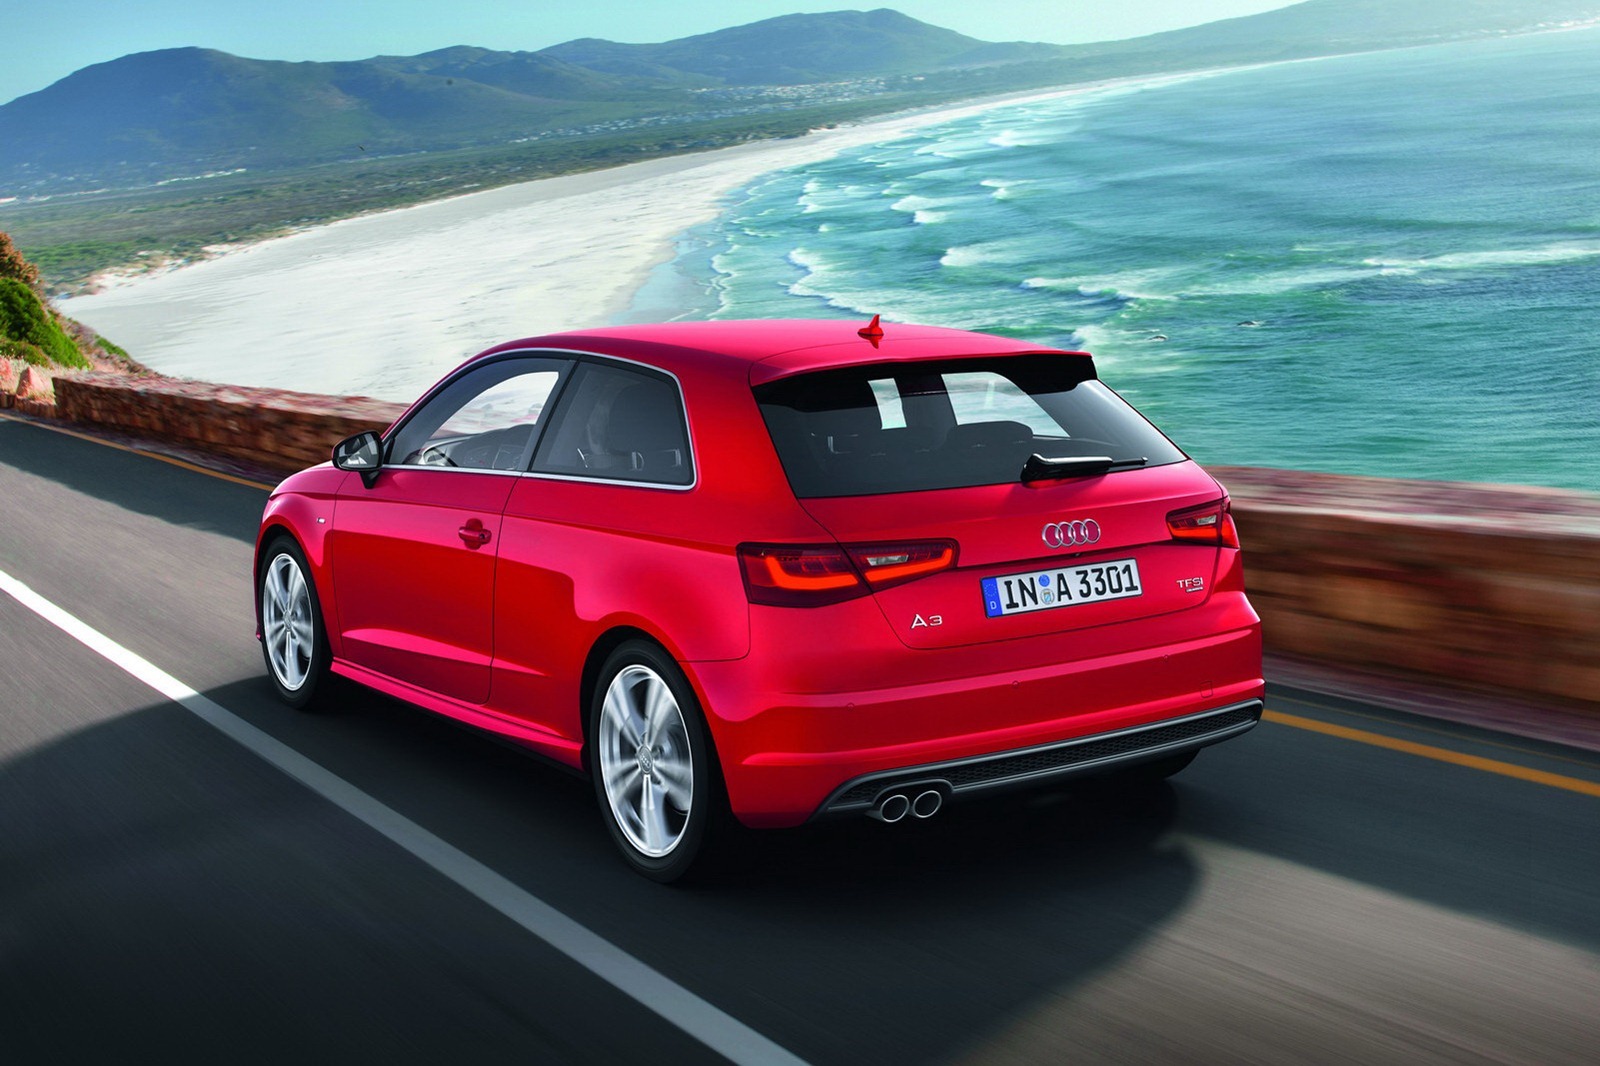 Pentru inceput, noul Audi A3 beneficiaza de doua motoare turbo pe benzina si un diesel TDI